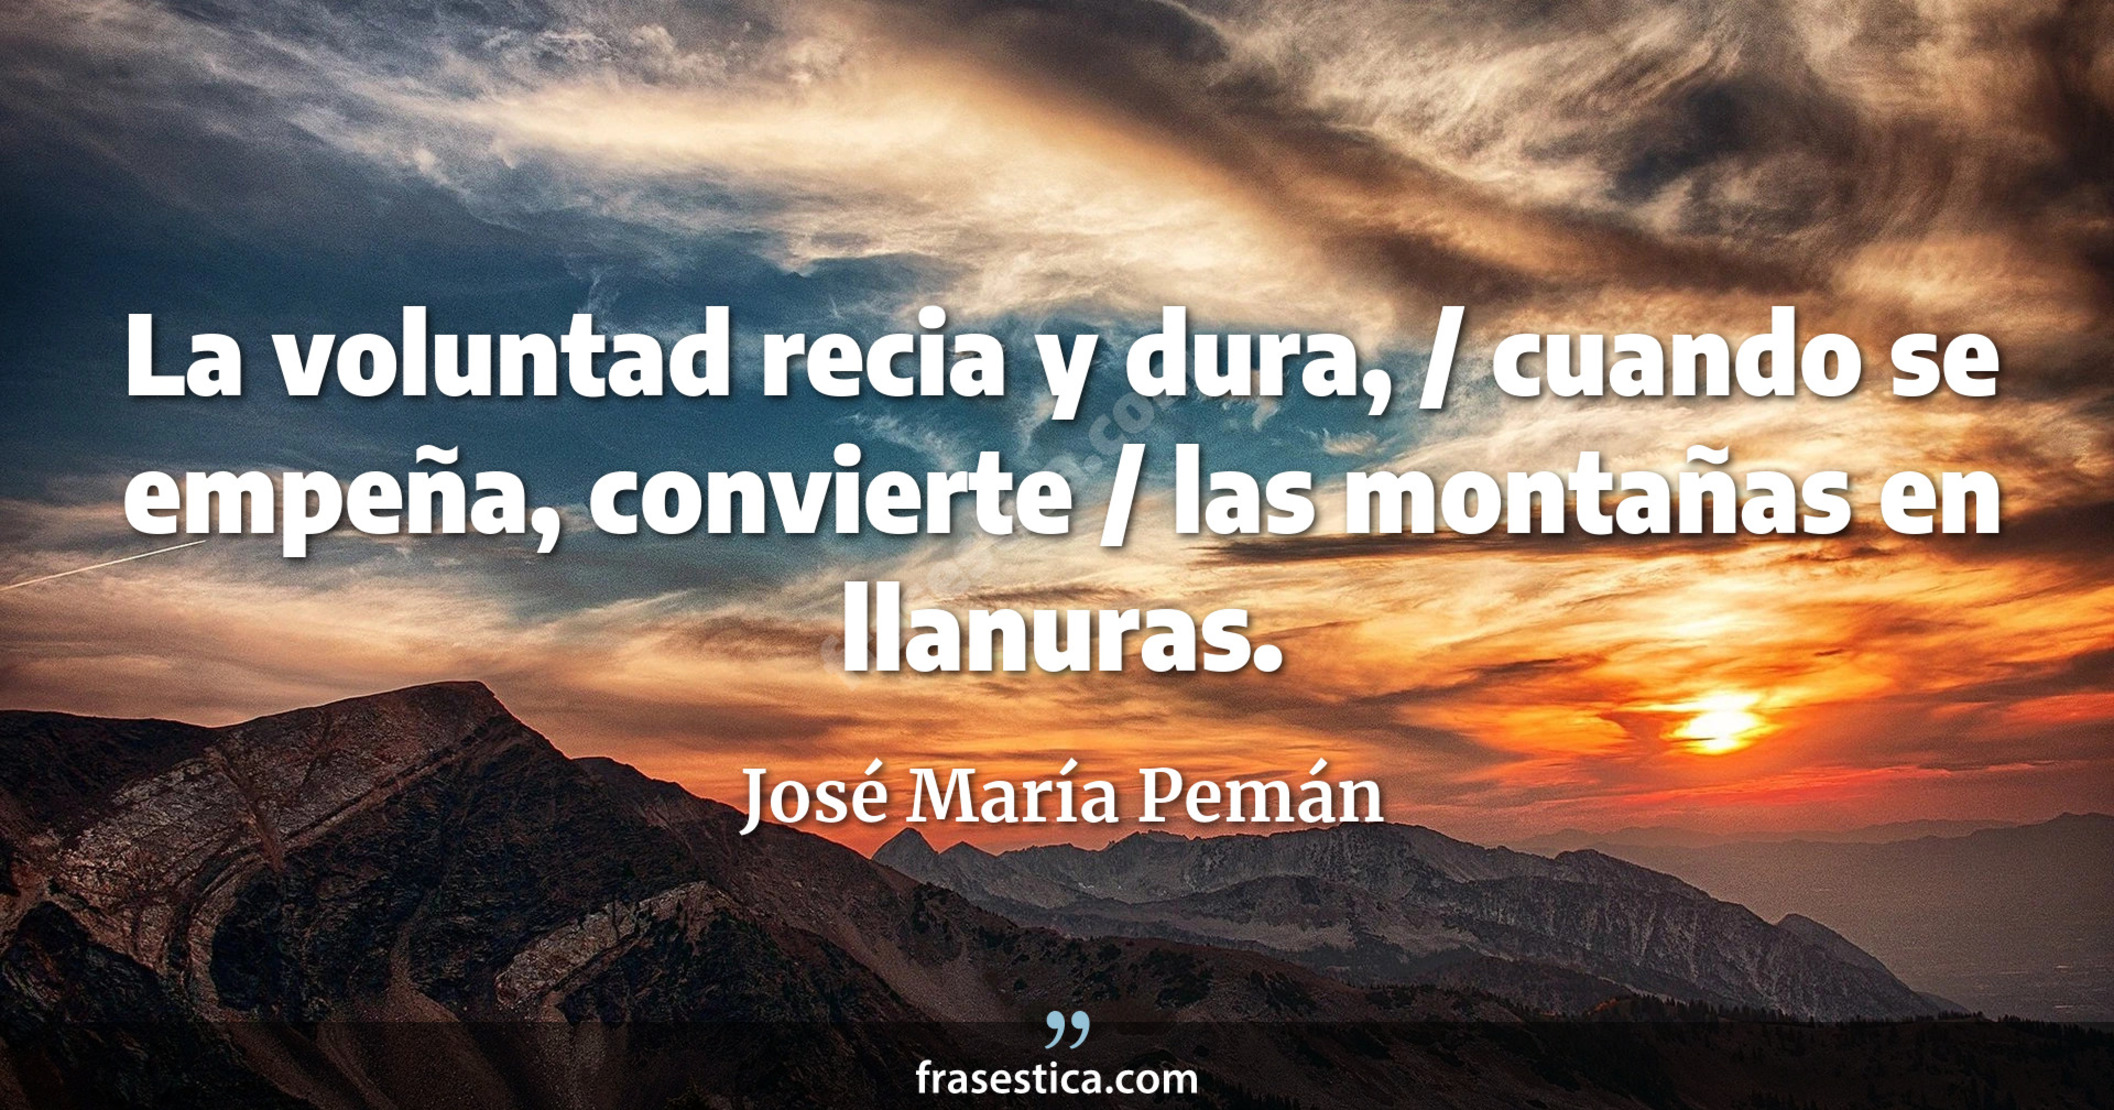 La voluntad recia y dura, / cuando se empeña, convierte / las montañas en llanuras. - José María Pemán